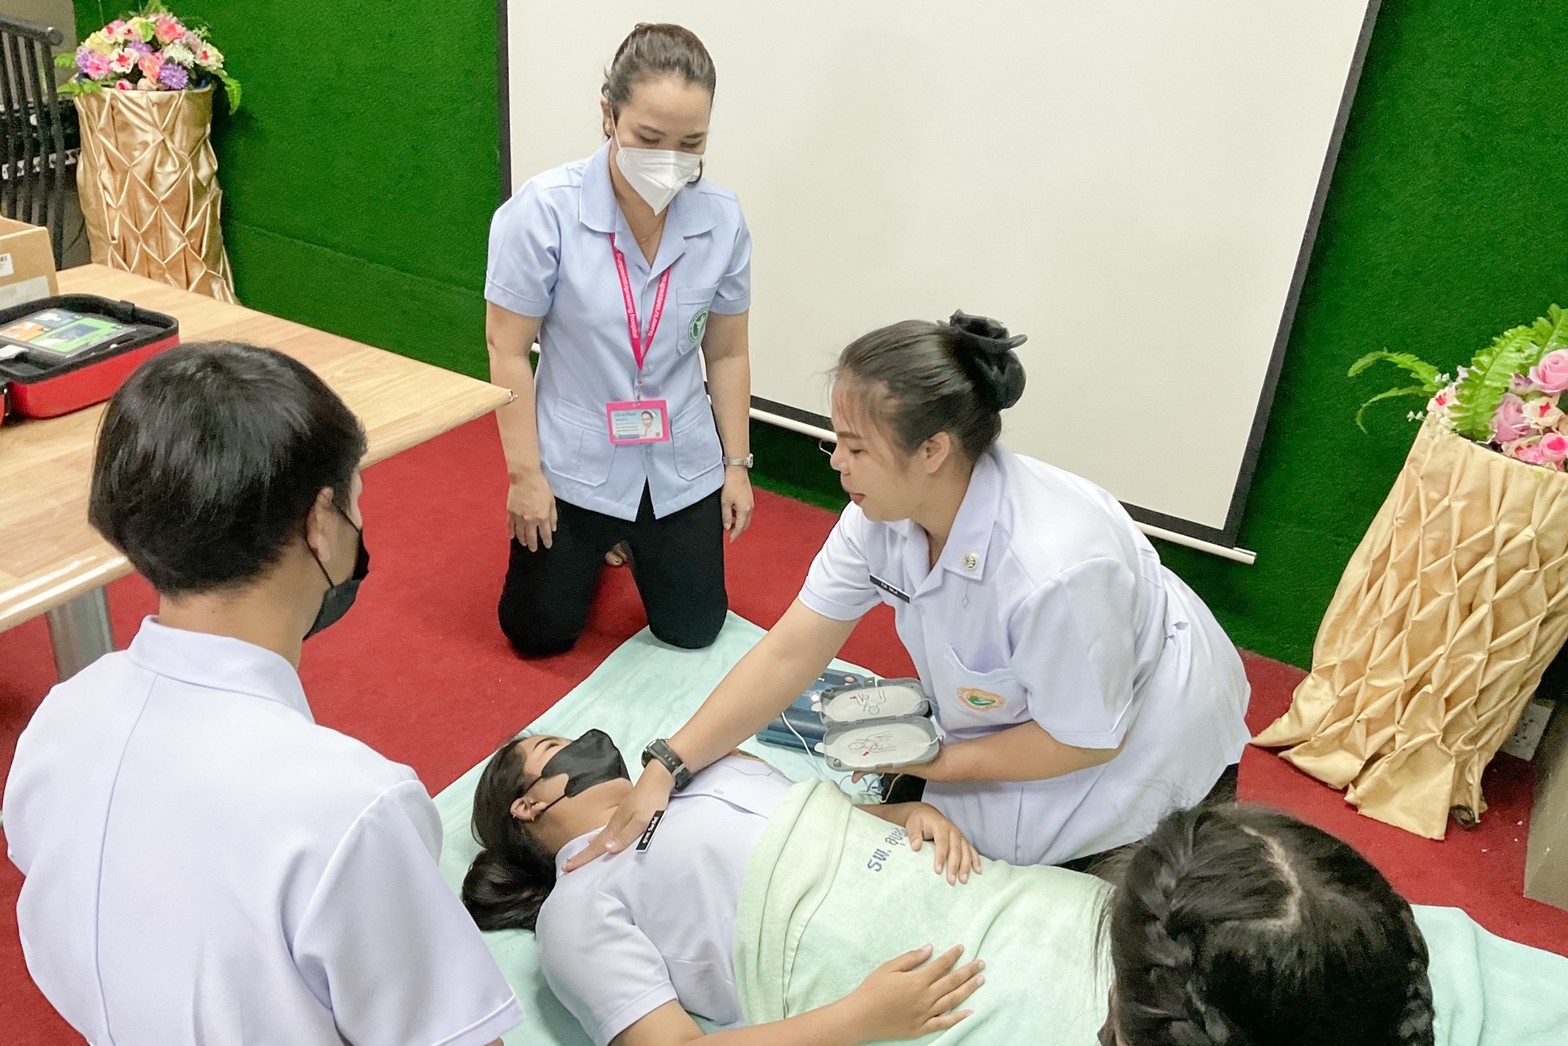 นักเรียนพนักงานผู้ช่วยการบริบาล รุ่น 43 อบรมปฏิบัติการช่วยฟื้นคืนชีพขั้นพื้นฐาน CPR ( Cardiopulmonary resuscitation ) การช่วยเหลือผู้ป่วยที่กำลังจะหยุดหายใจ